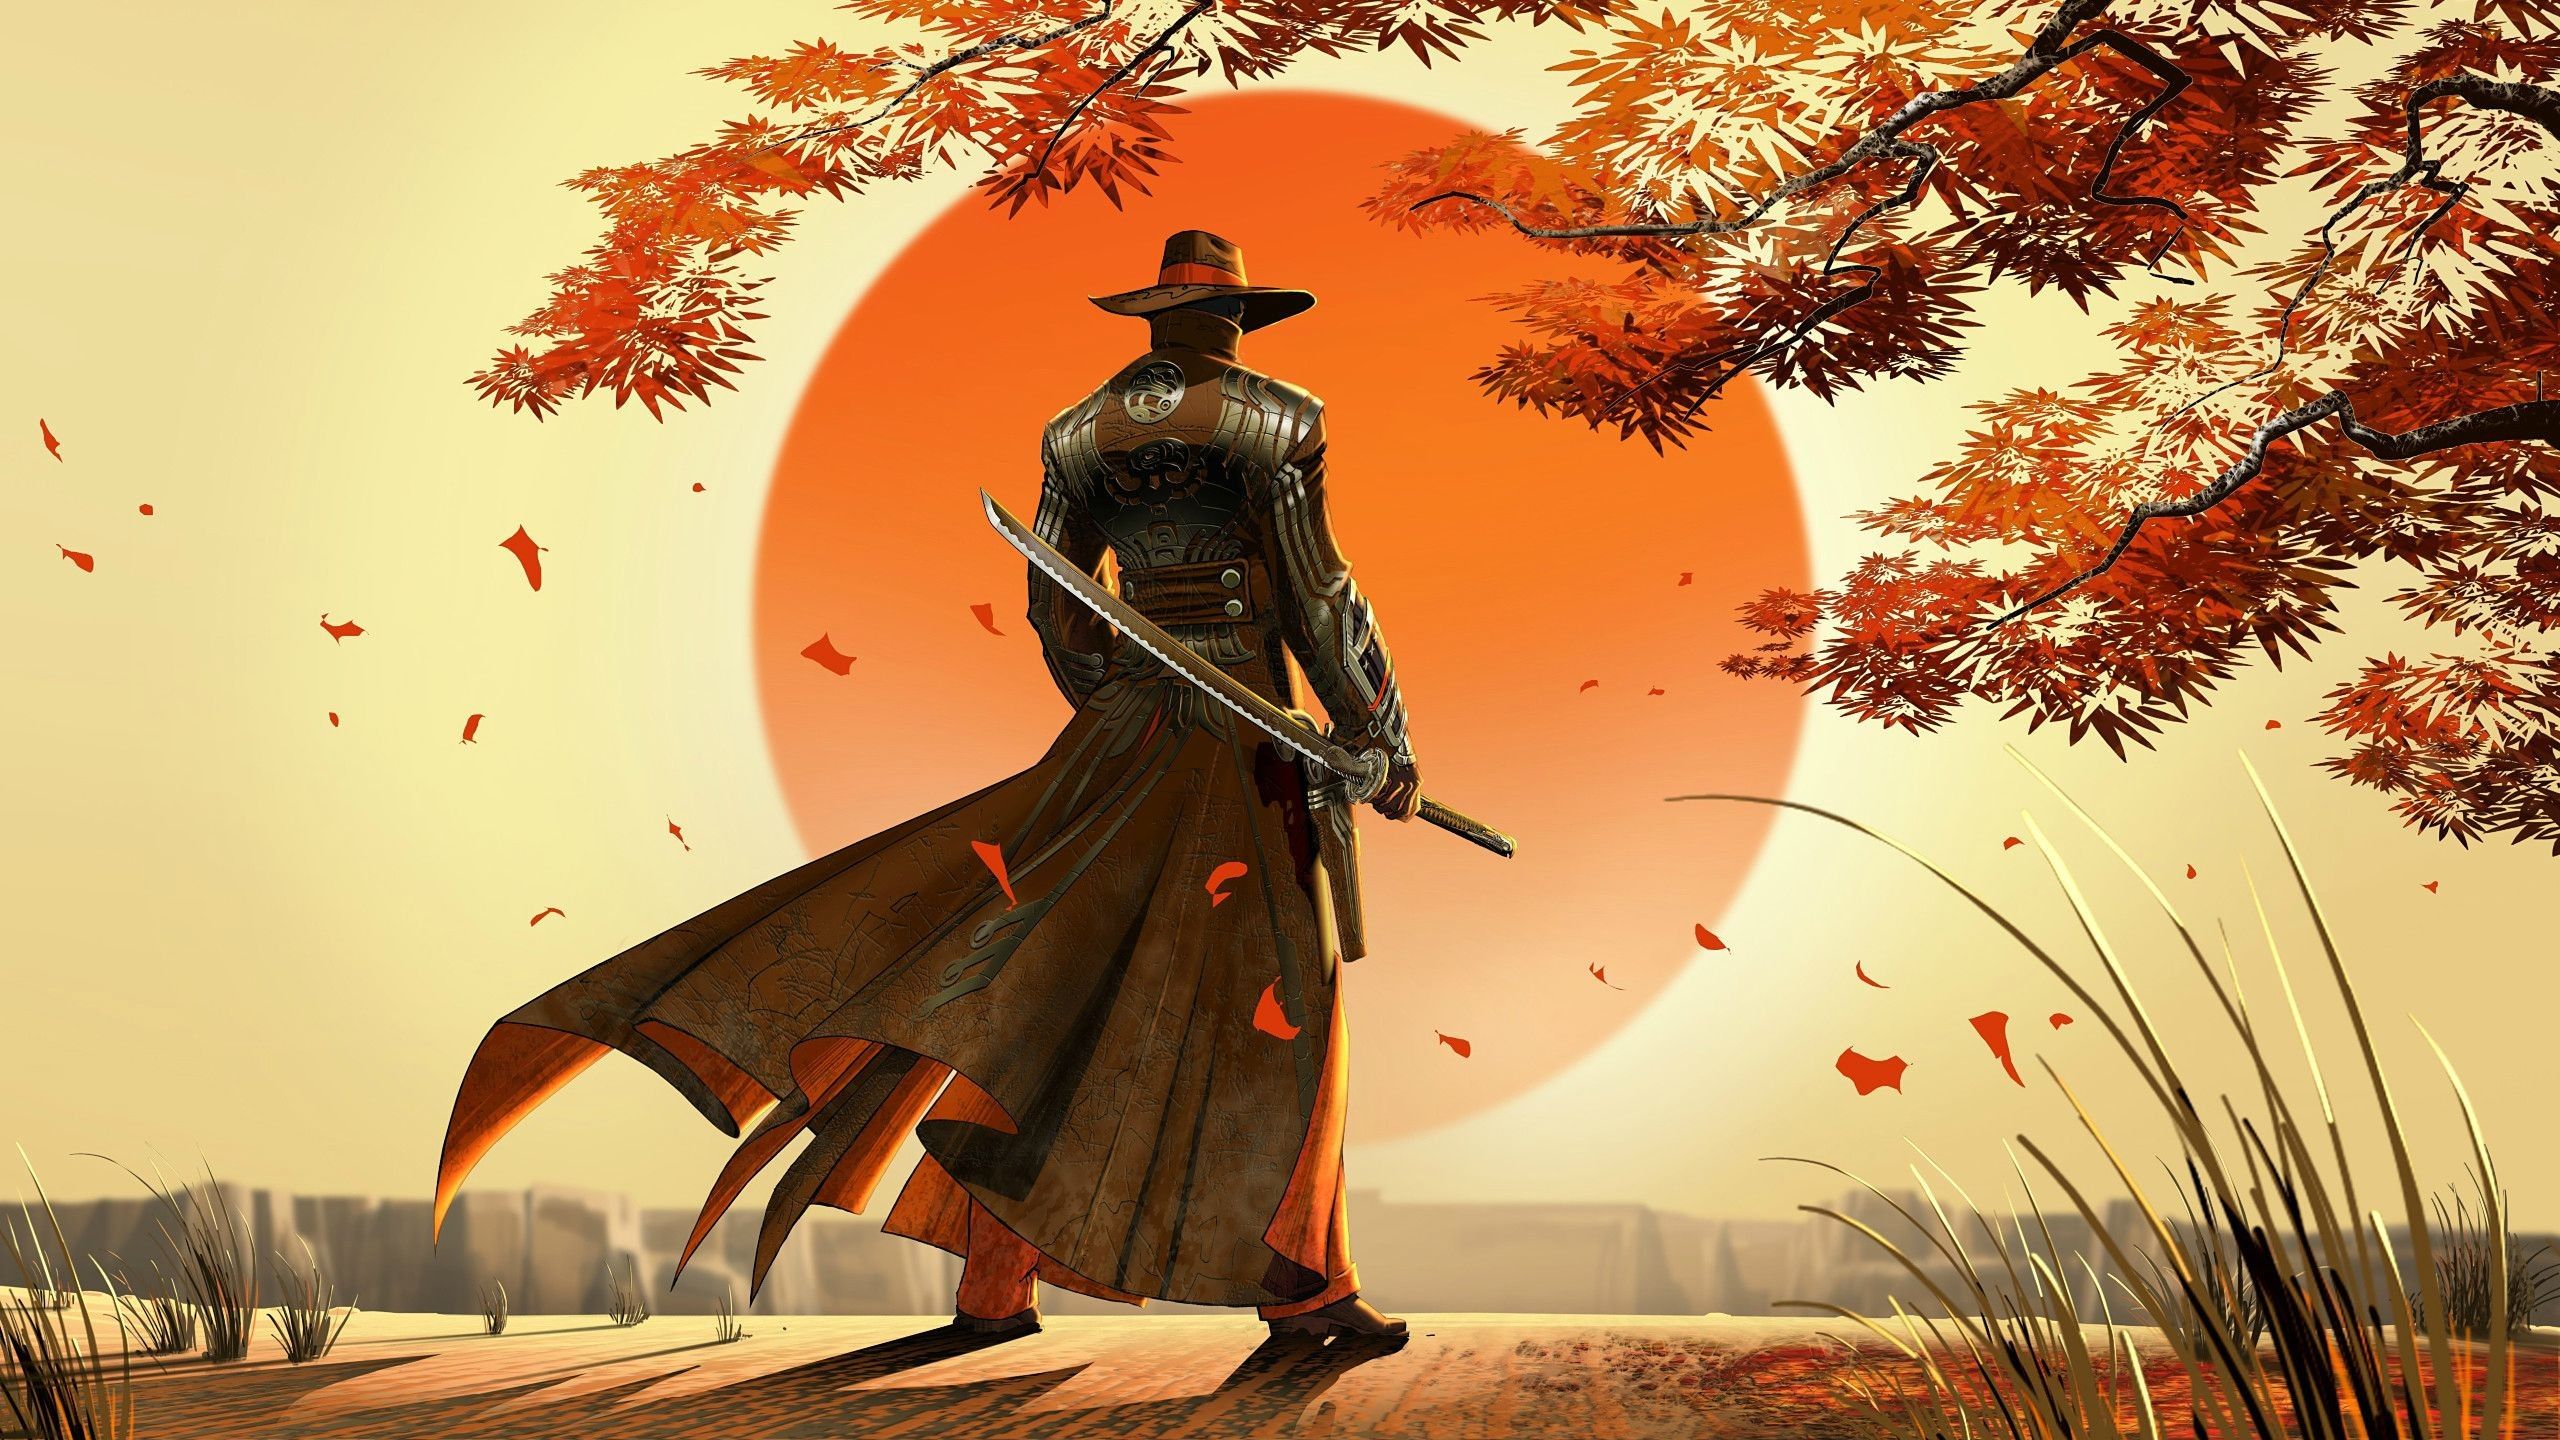 Sắm cho mình một hình nền samurai 4K và bạn sẽ có một trải nghiệm tuyệt vời với màn hình của bạn. Các chiến binh samurai đầy hào hoa và mạnh mẽ sẽ truyền cảm hứng cho bạn cả trong công việc và cuộc sống. Và với độ sắc nét của hình ảnh, họ sẽ mang lại cho bạn một trải nghiệm thật sự.